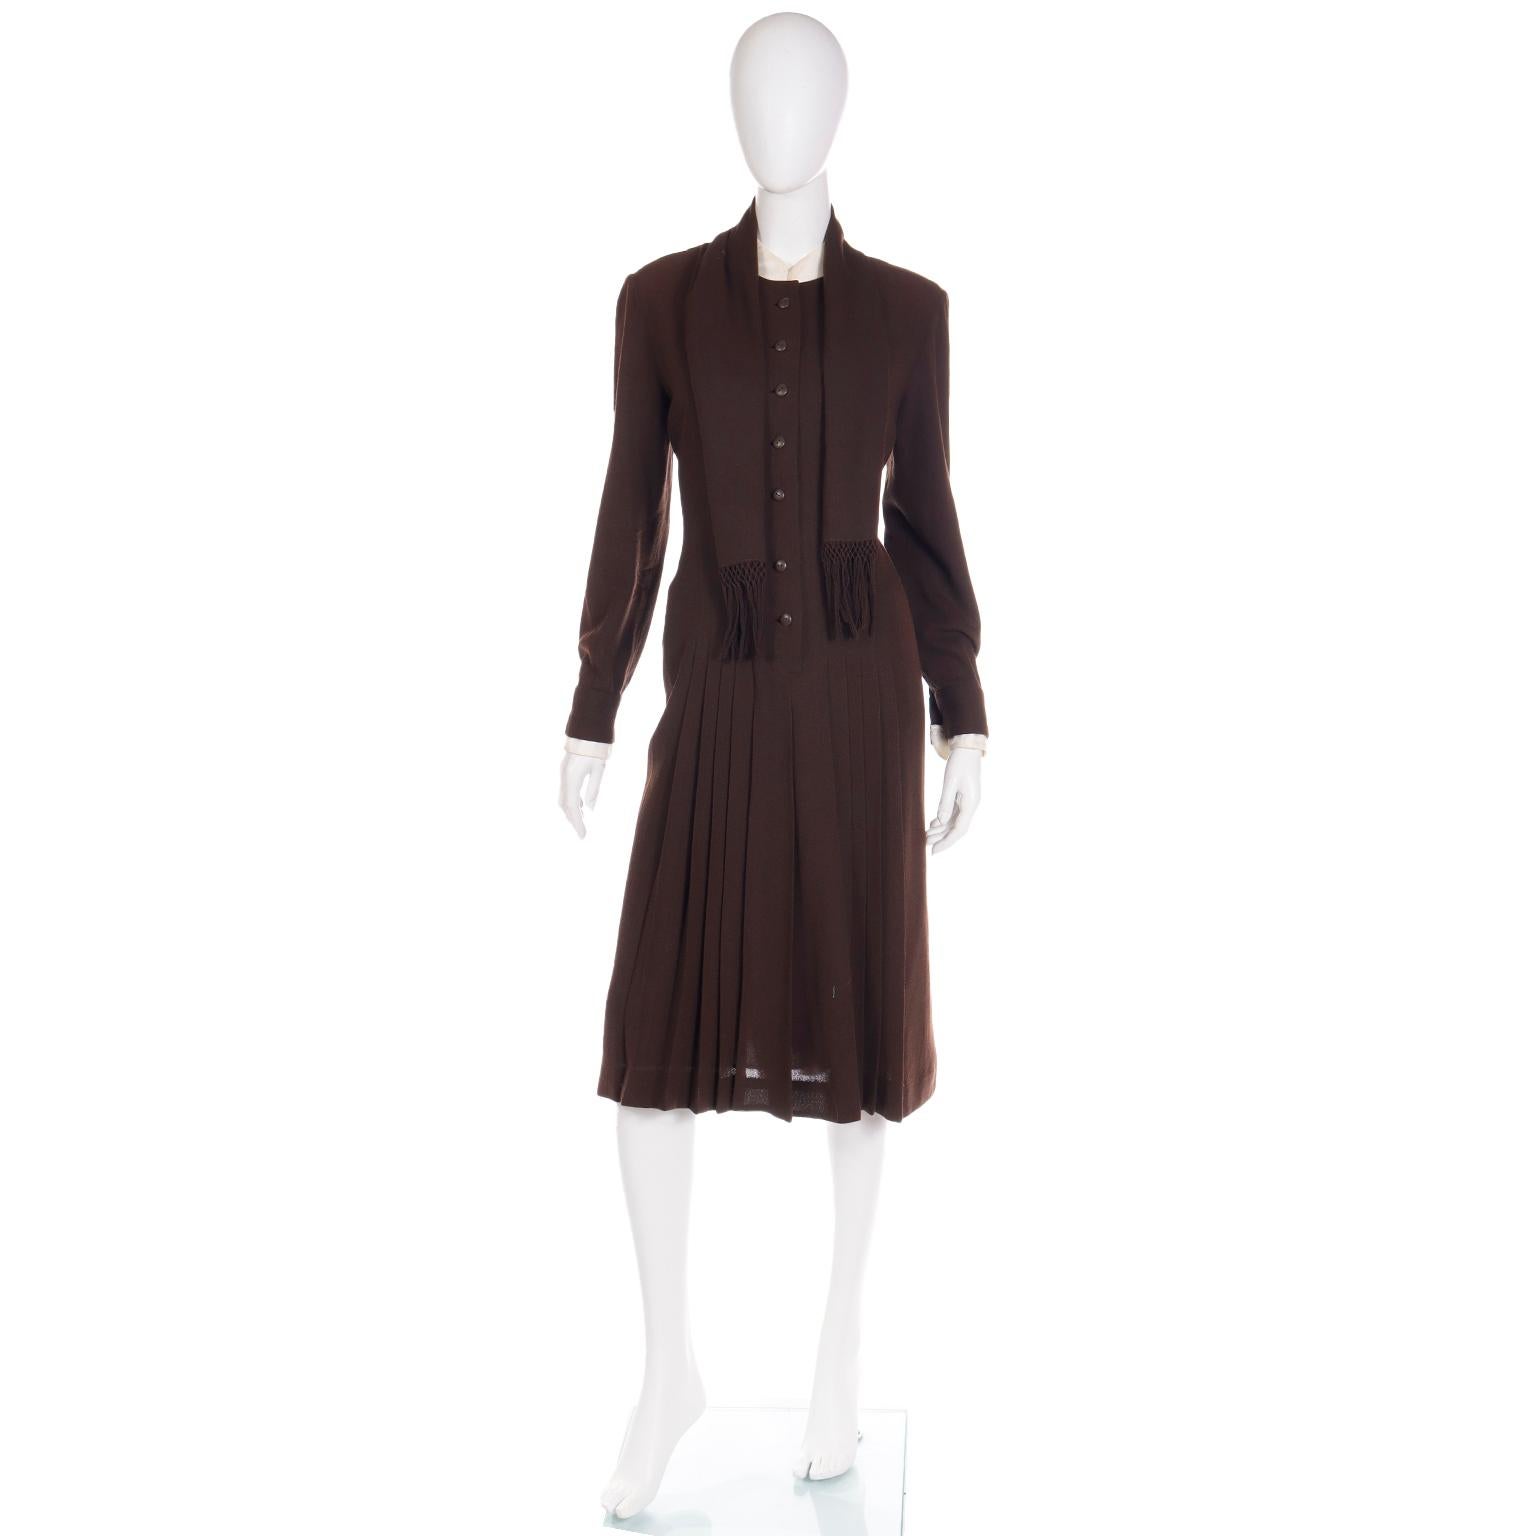 Cette robe vintage ultra chic et sophistiquée a été réalisée par Jean Louis For I. Magnin à la fin des années 1970. Nous avons acquis cette robe auprès d'une importante succession qui ne possédait rien d'autre que des vêtements vintage de créateurs